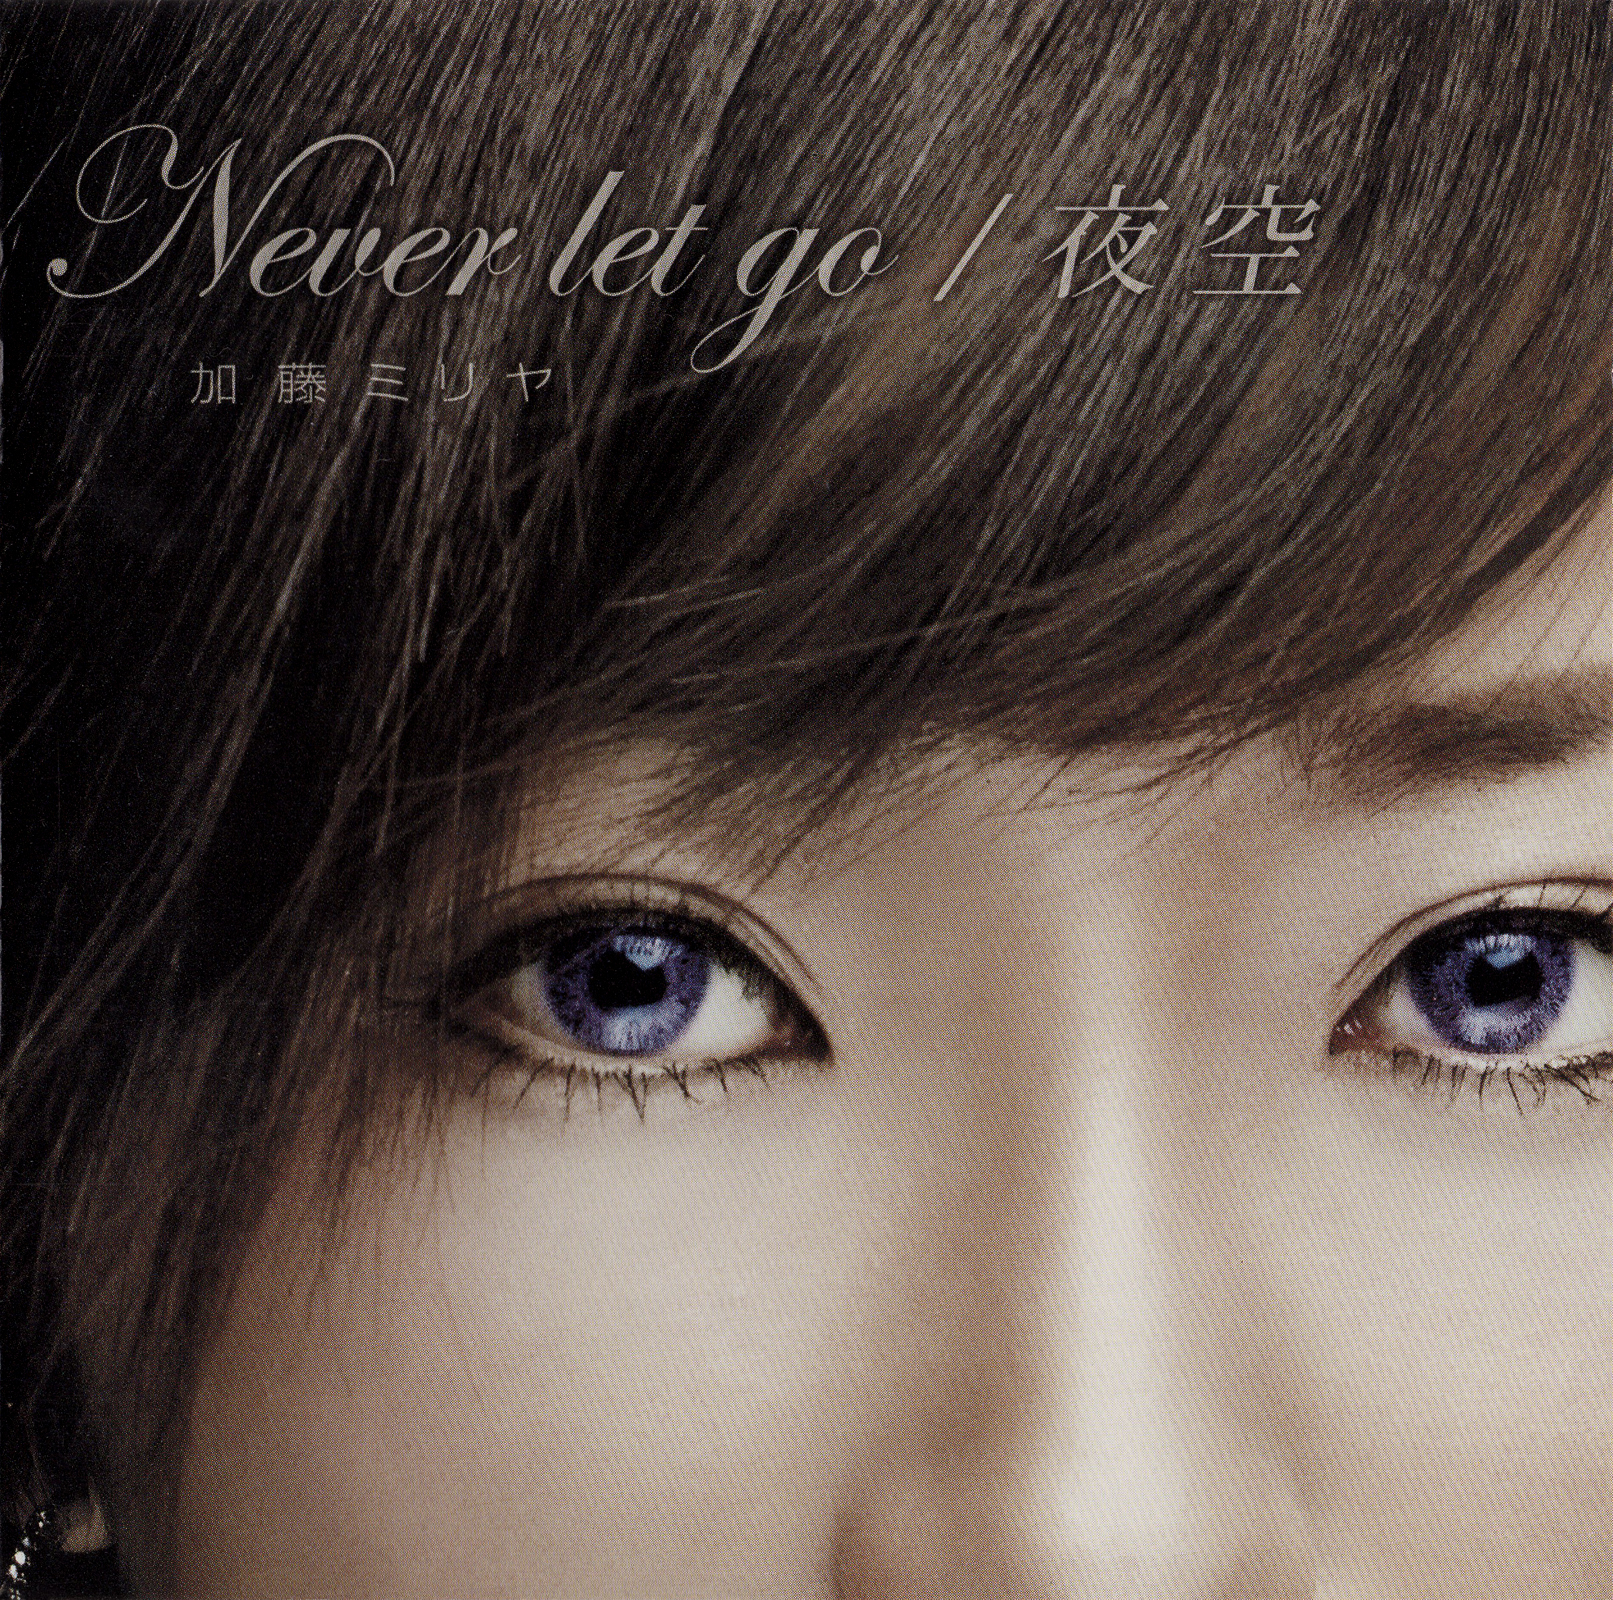 加藤ミリヤ 1stシングル『Never let go/夜空』(2004年9月8日発売) 高画質ジャケット画像